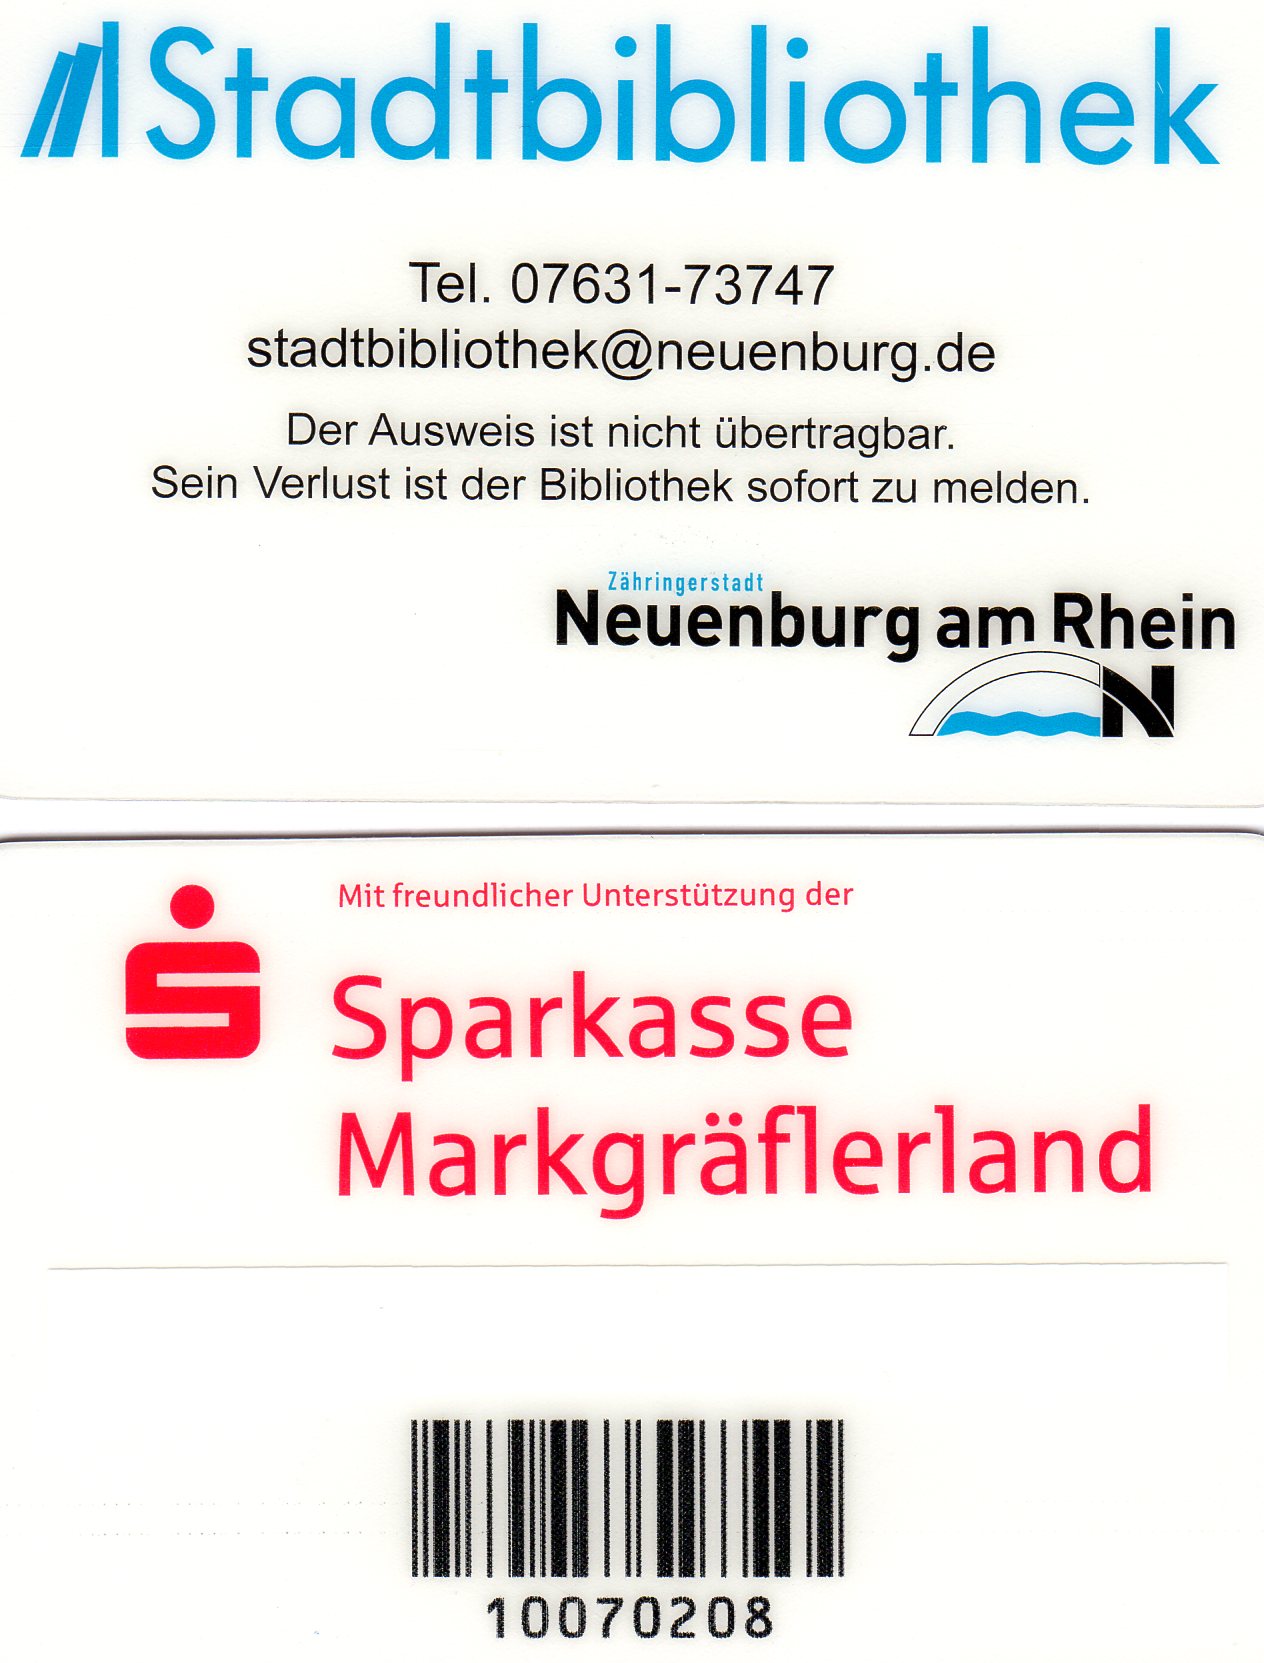 Foto von Vorder- und Rückseite des Neuenburger Bibliotheksausweises